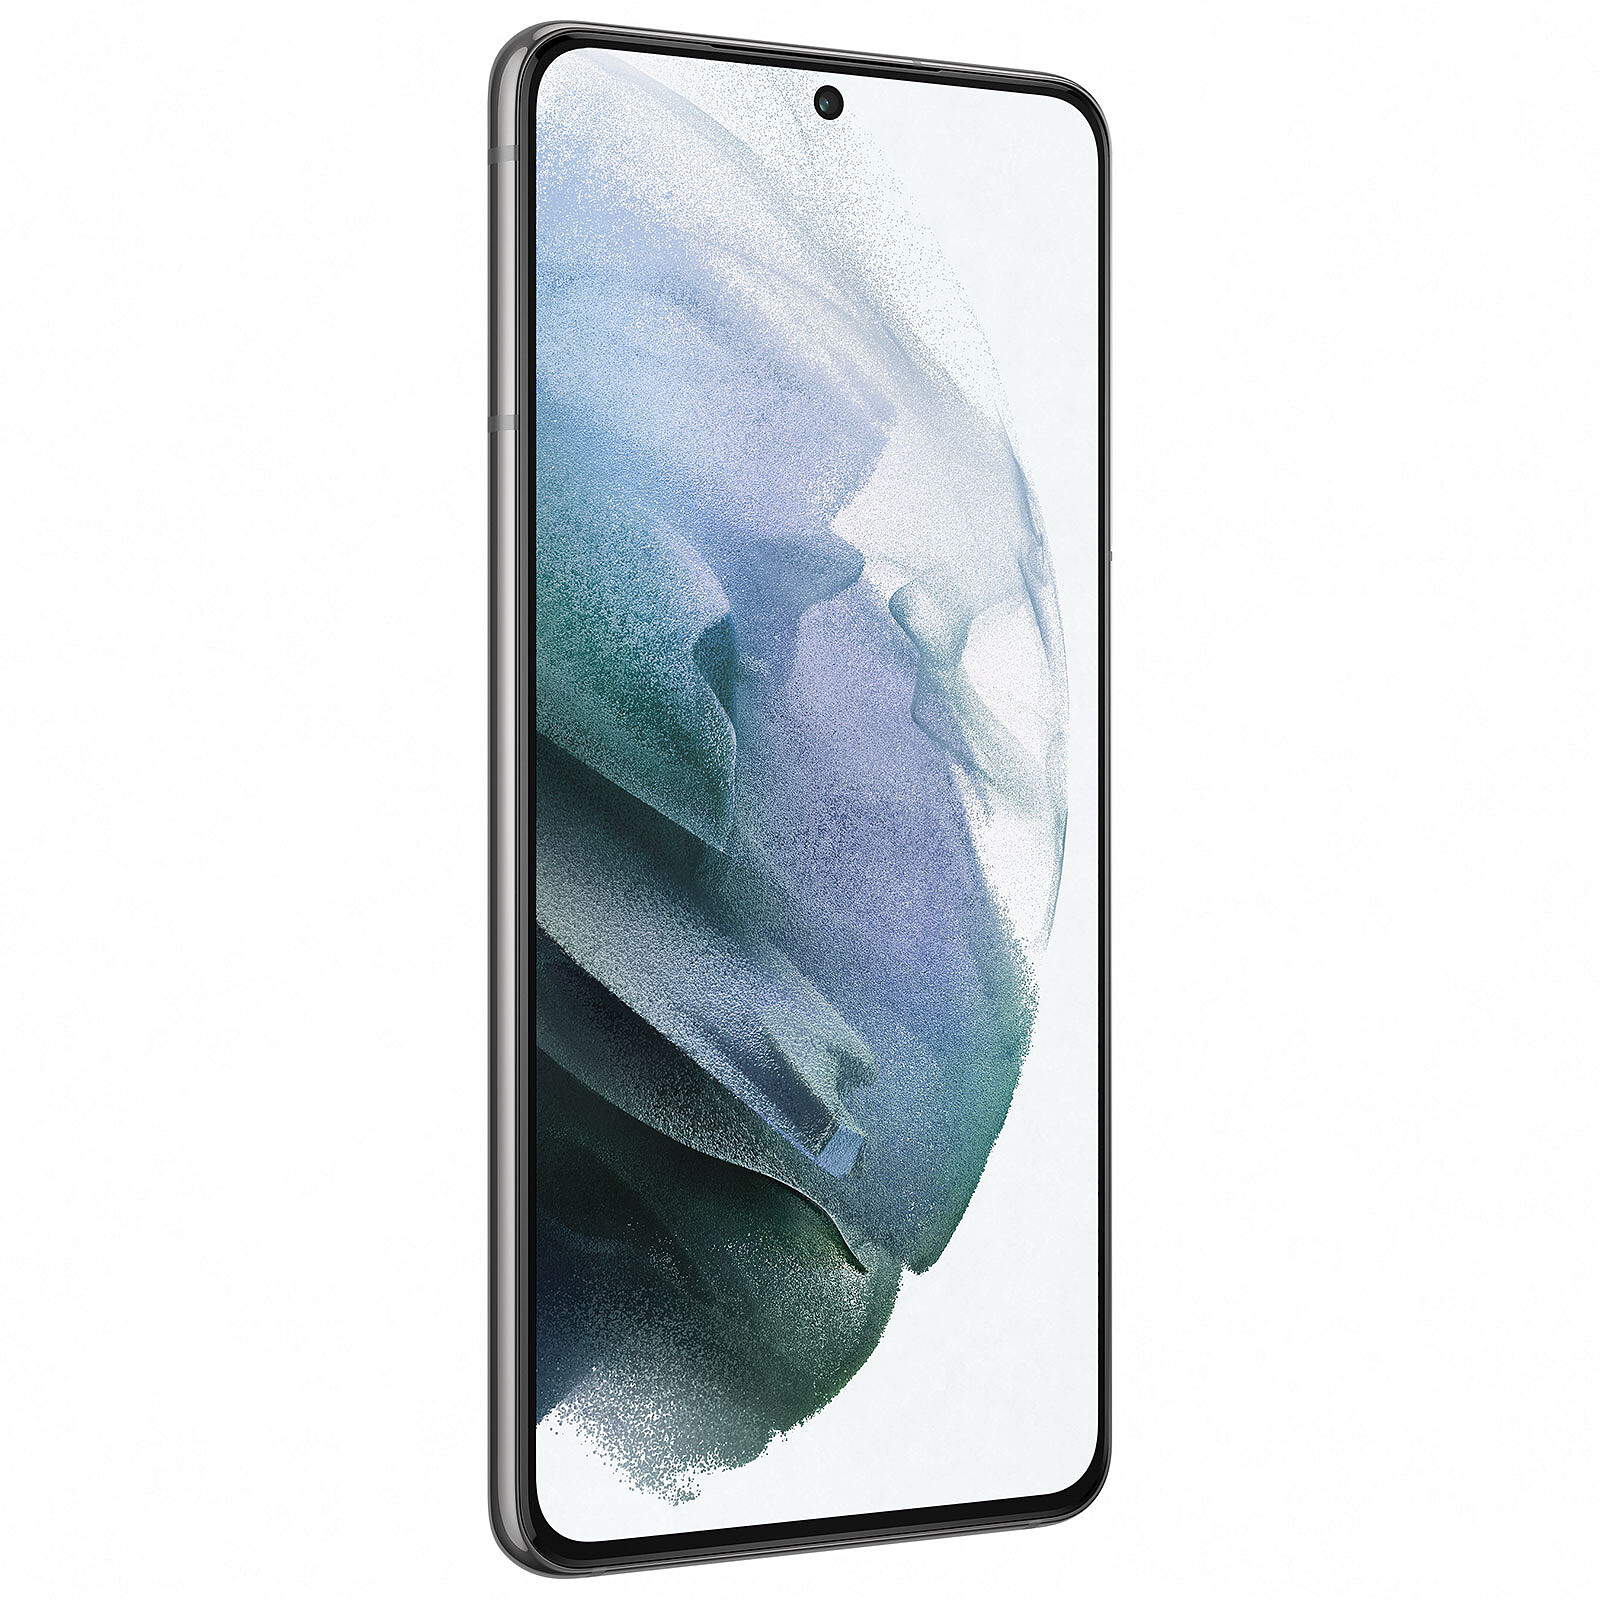 Samsung Galaxy A40 Blanc · Reconditionné - Smartphone reconditionné - LDLC